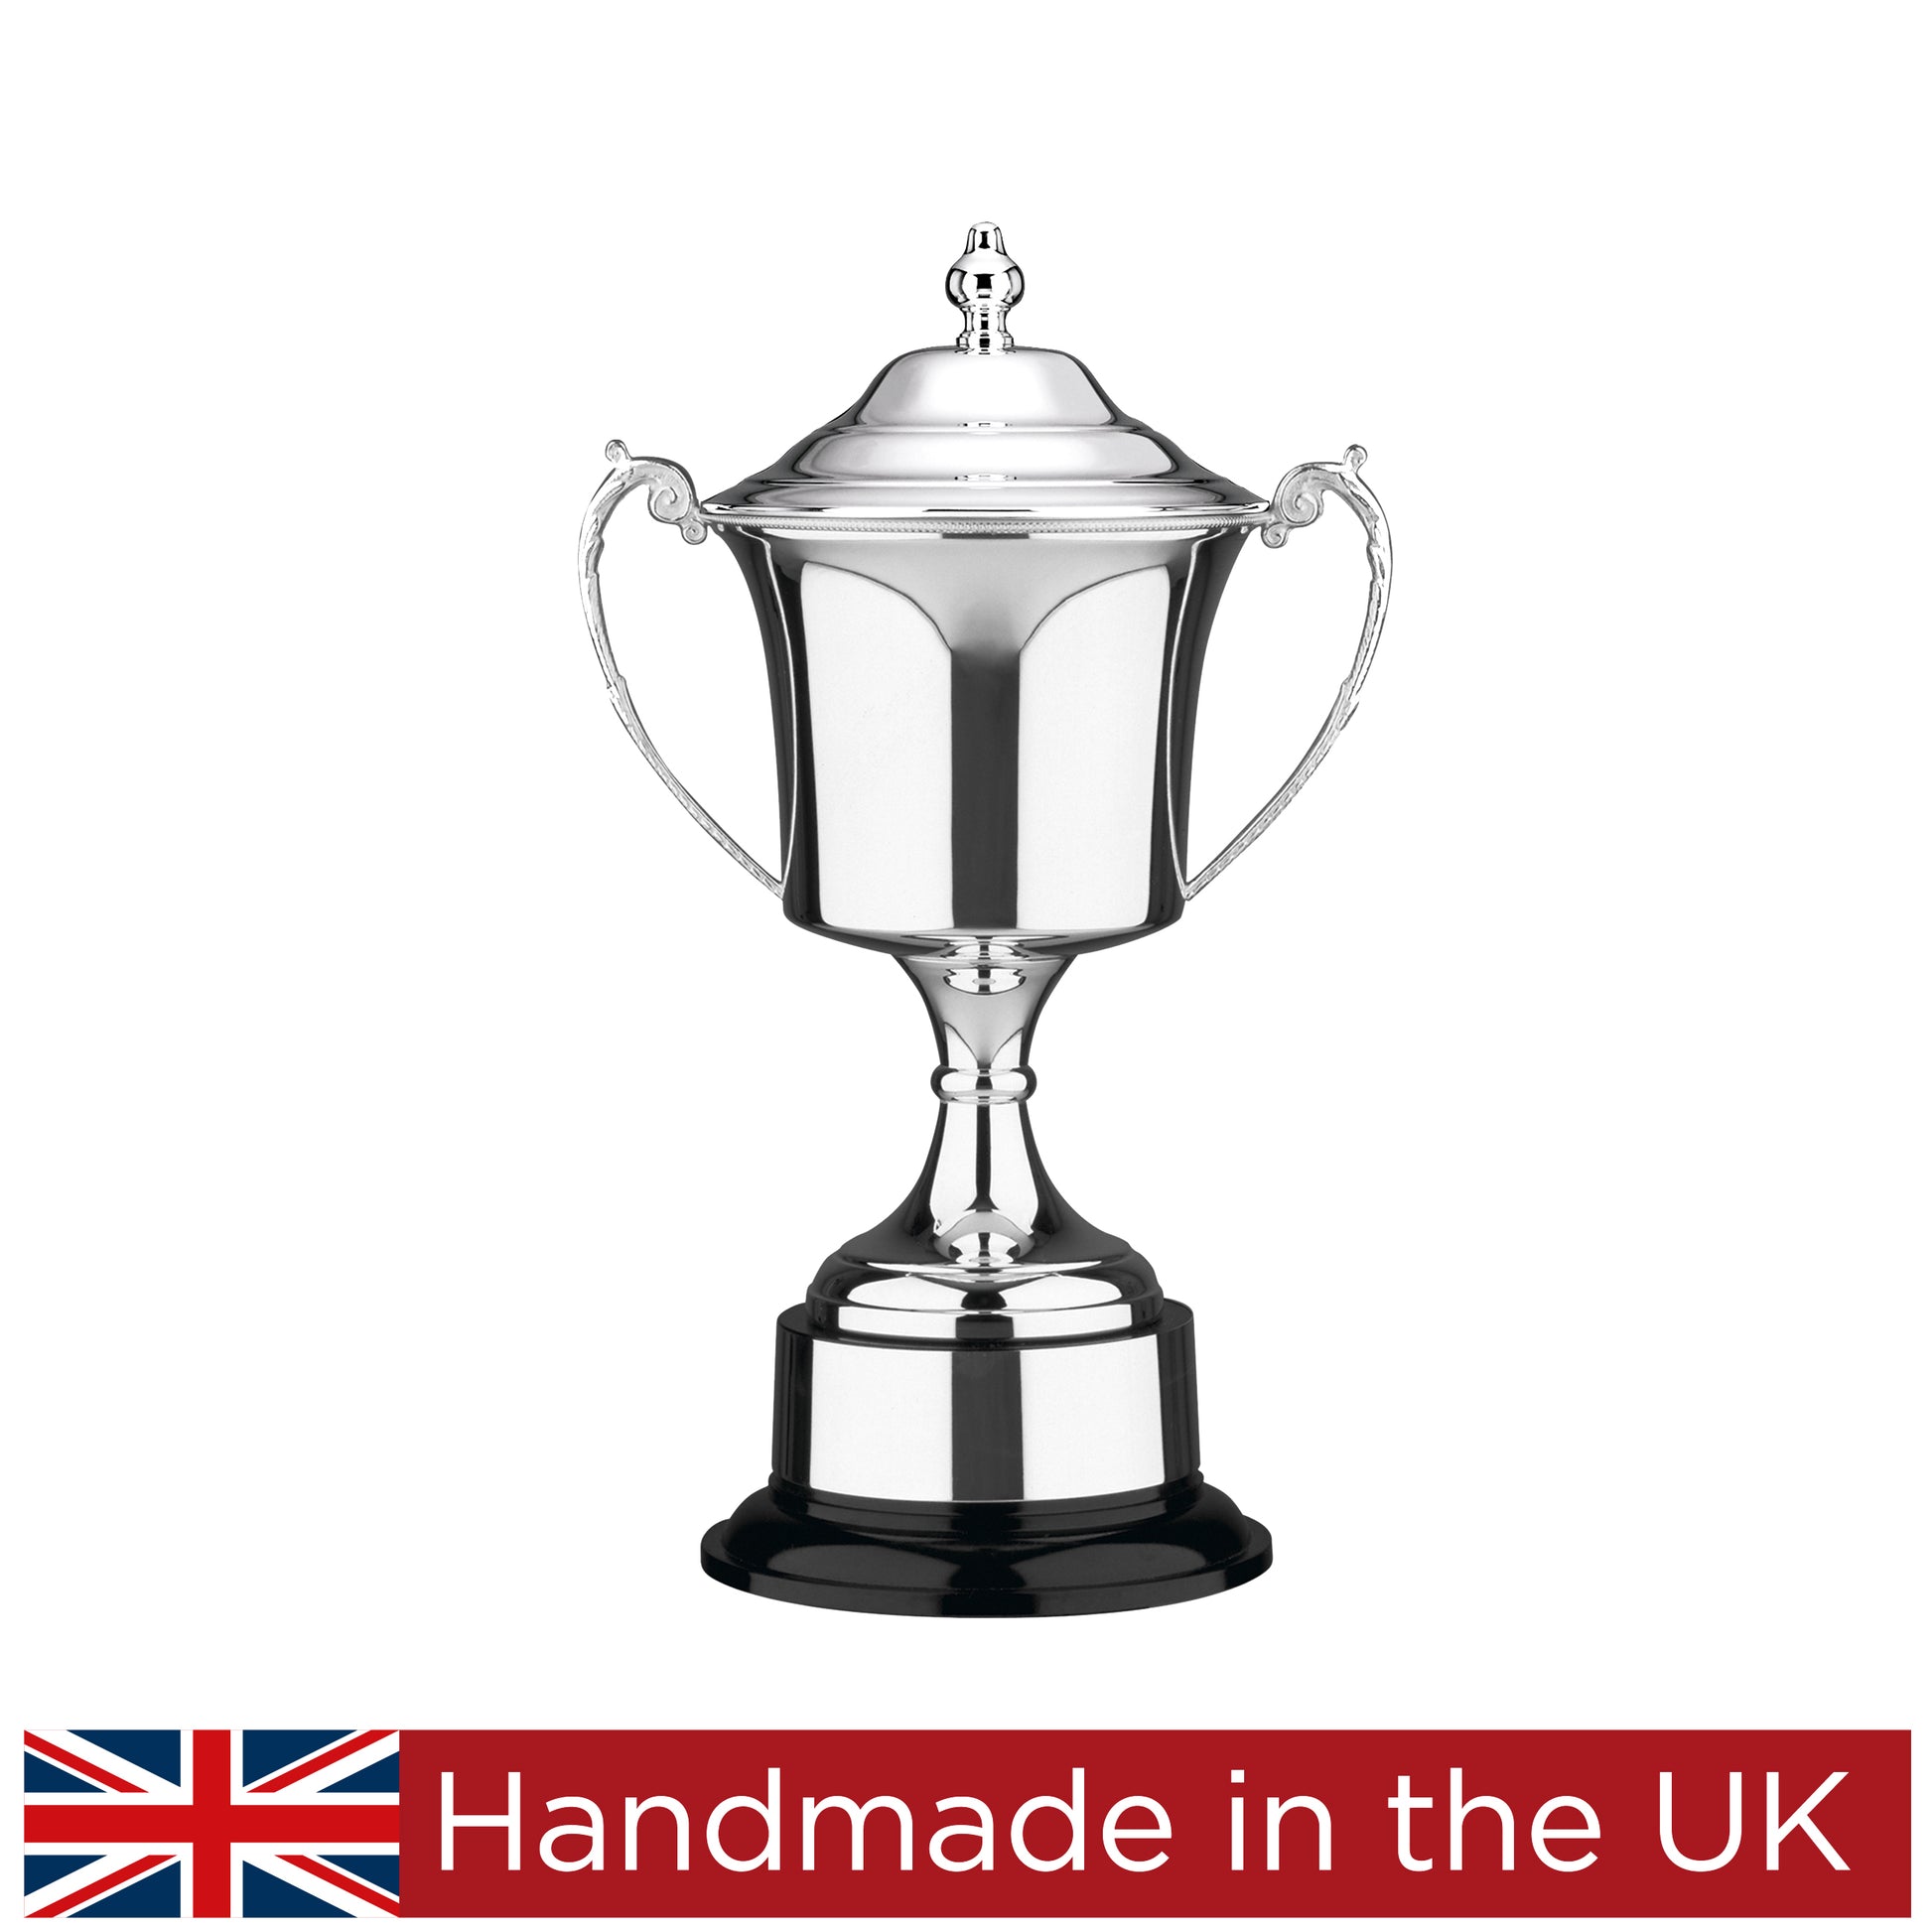 Prestigious Cup - Studio Handmade Cup by Gaudio Awards